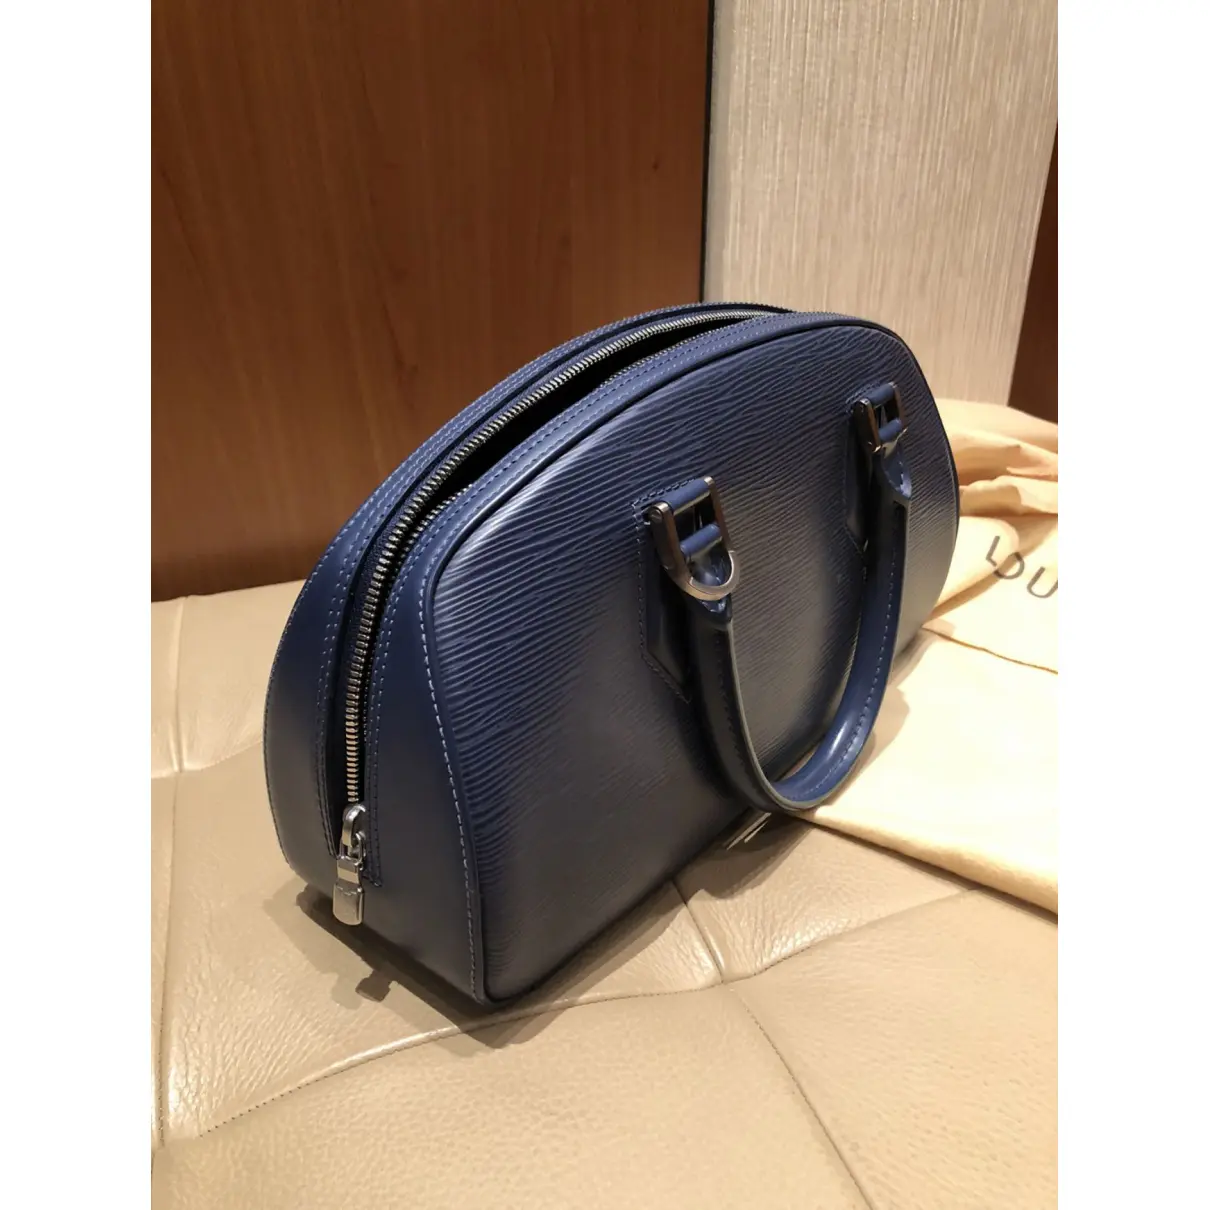 Jasmin leather handbag Louis Vuitton